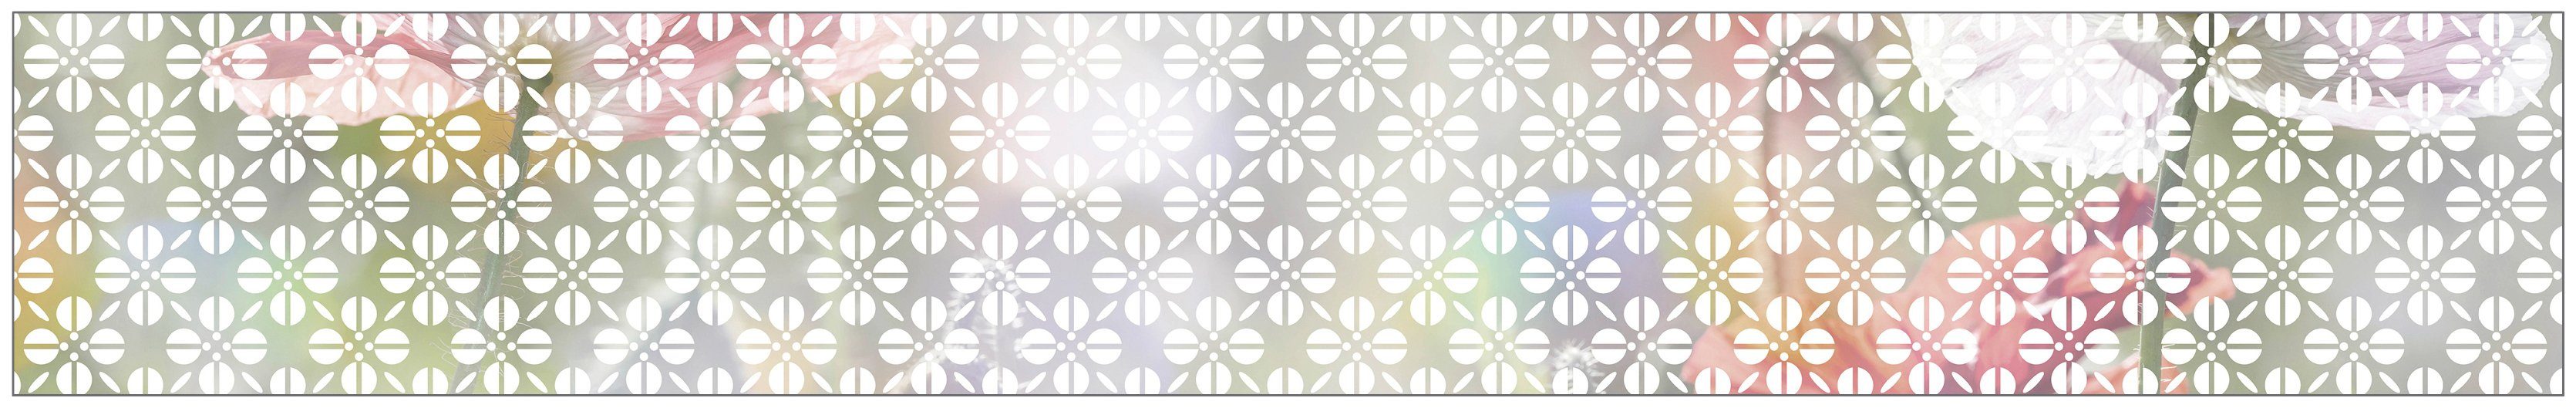 Fensterfolie Look Grafik Blumenmuster halbtransparent, x white, glatt, 200 MySpotti, cm, 30 statisch haftend